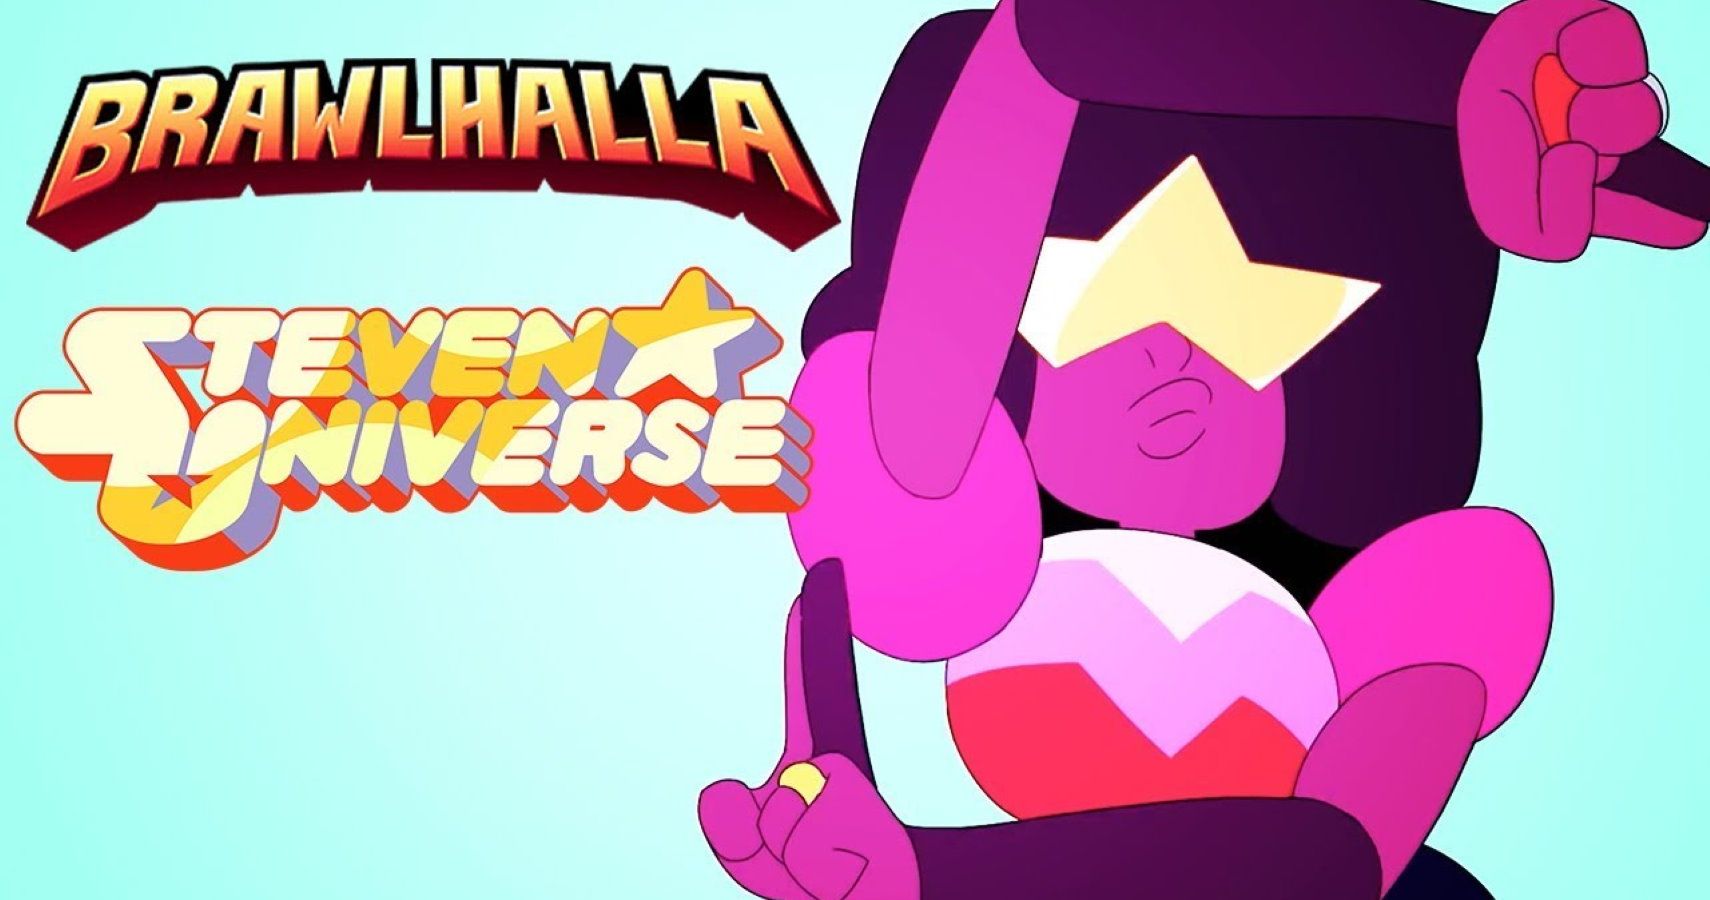 Steven Universe Brawlhalla